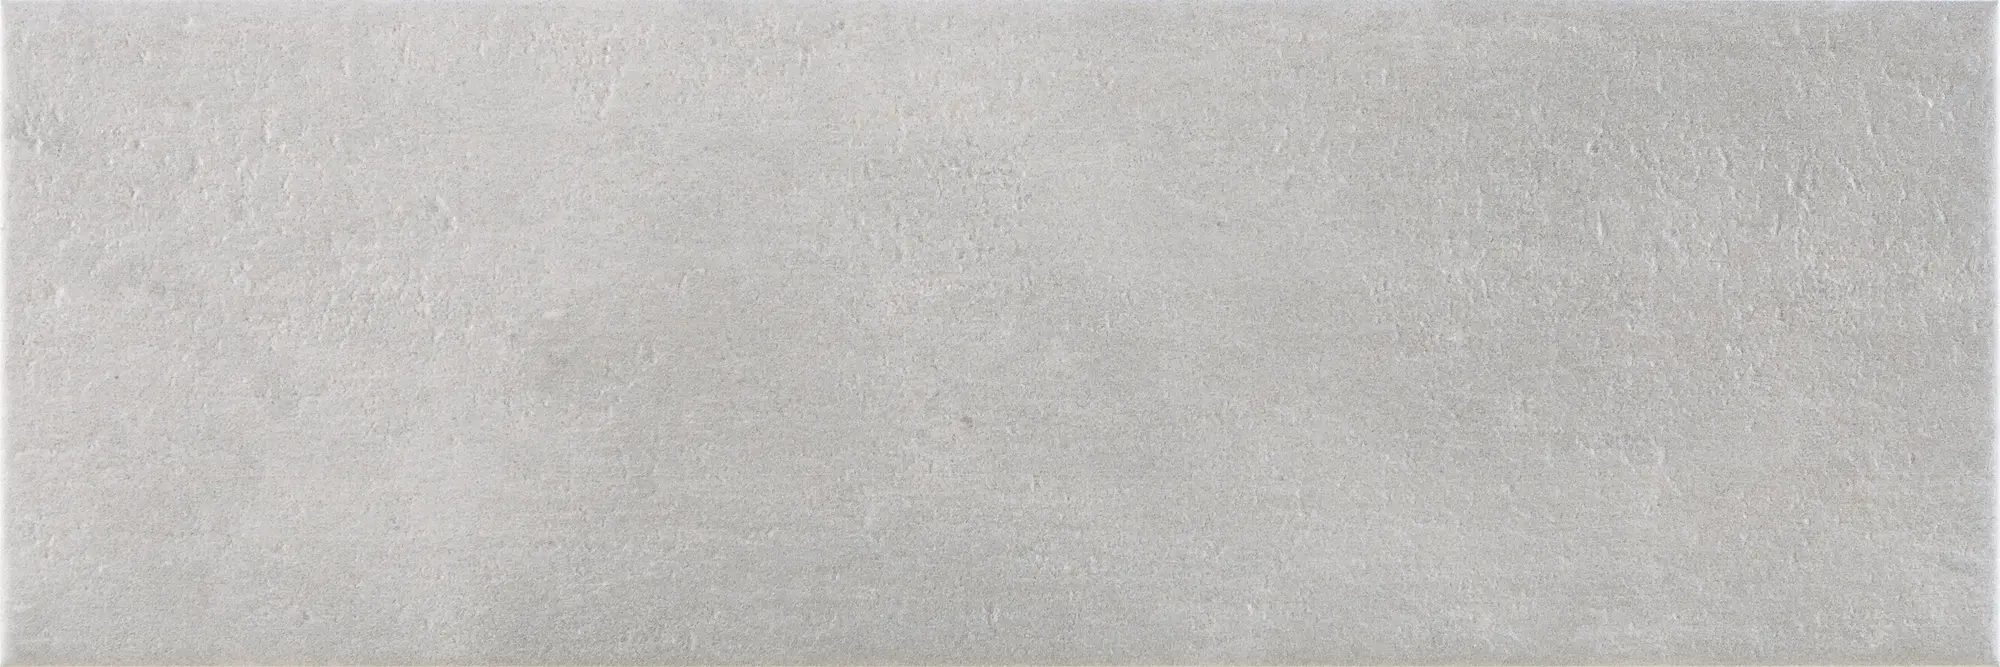 Azulejo cerámico caen efecto cemento gris 20x60 cm